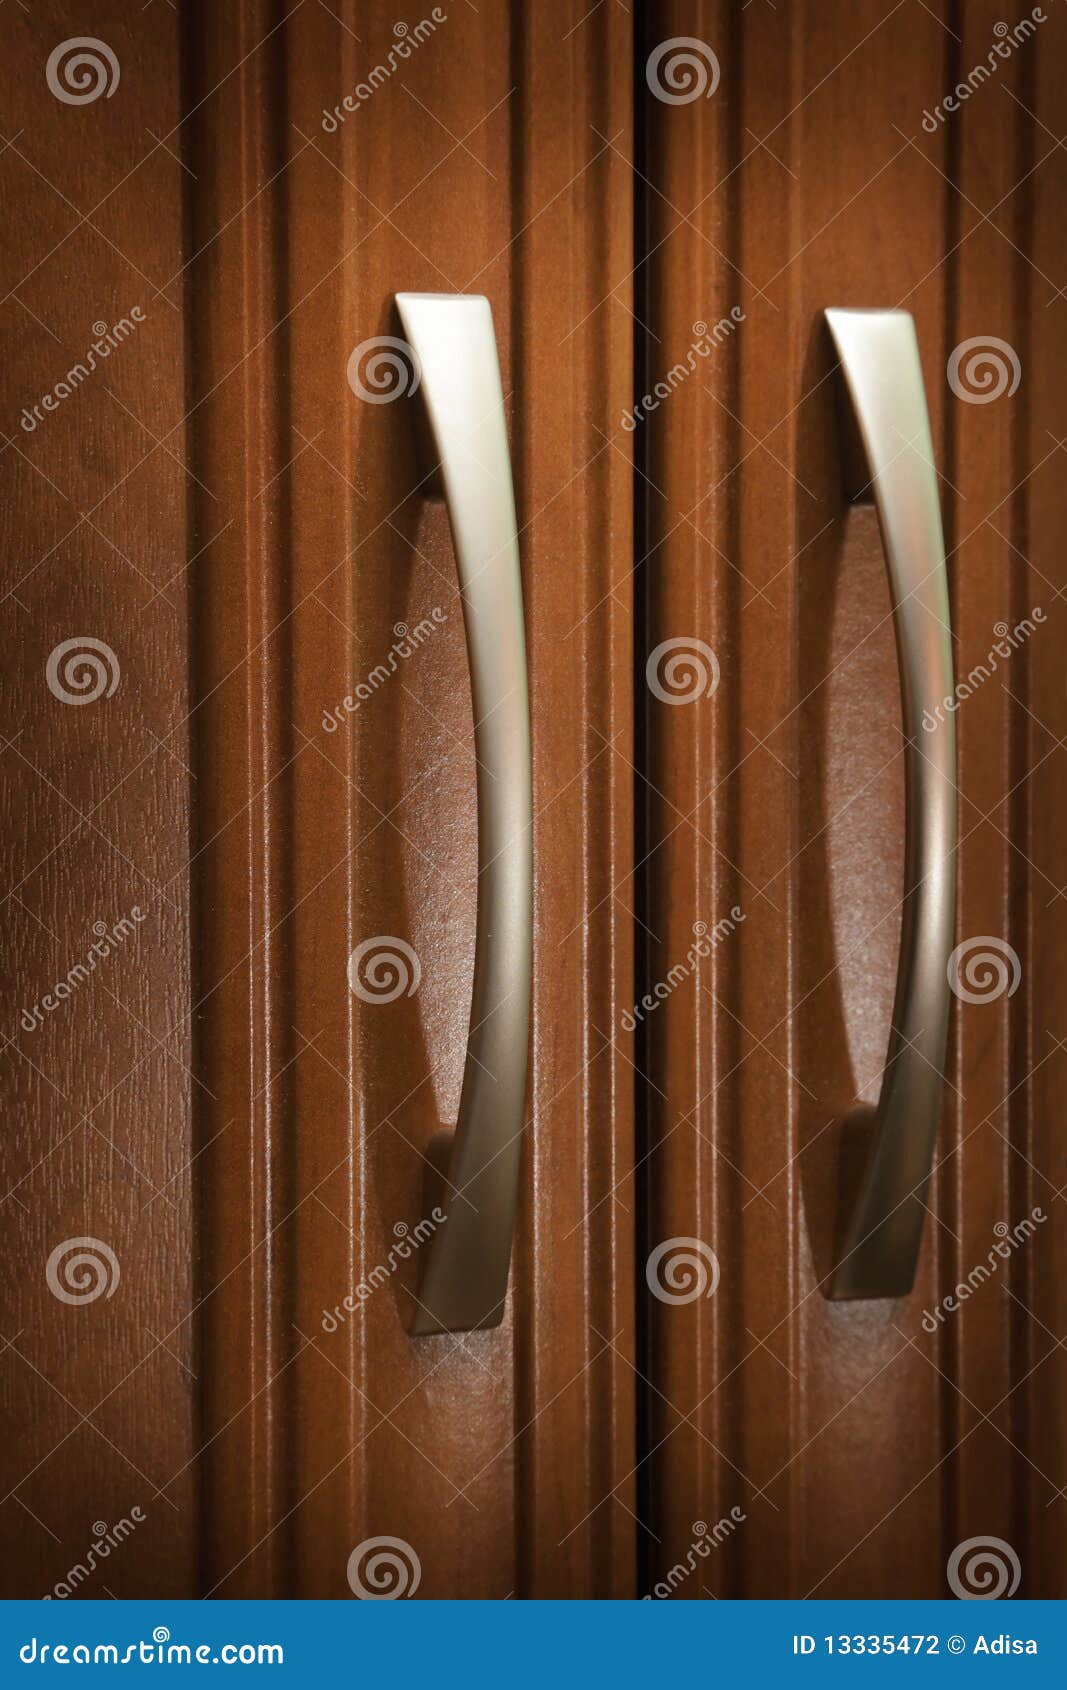 doors and handles